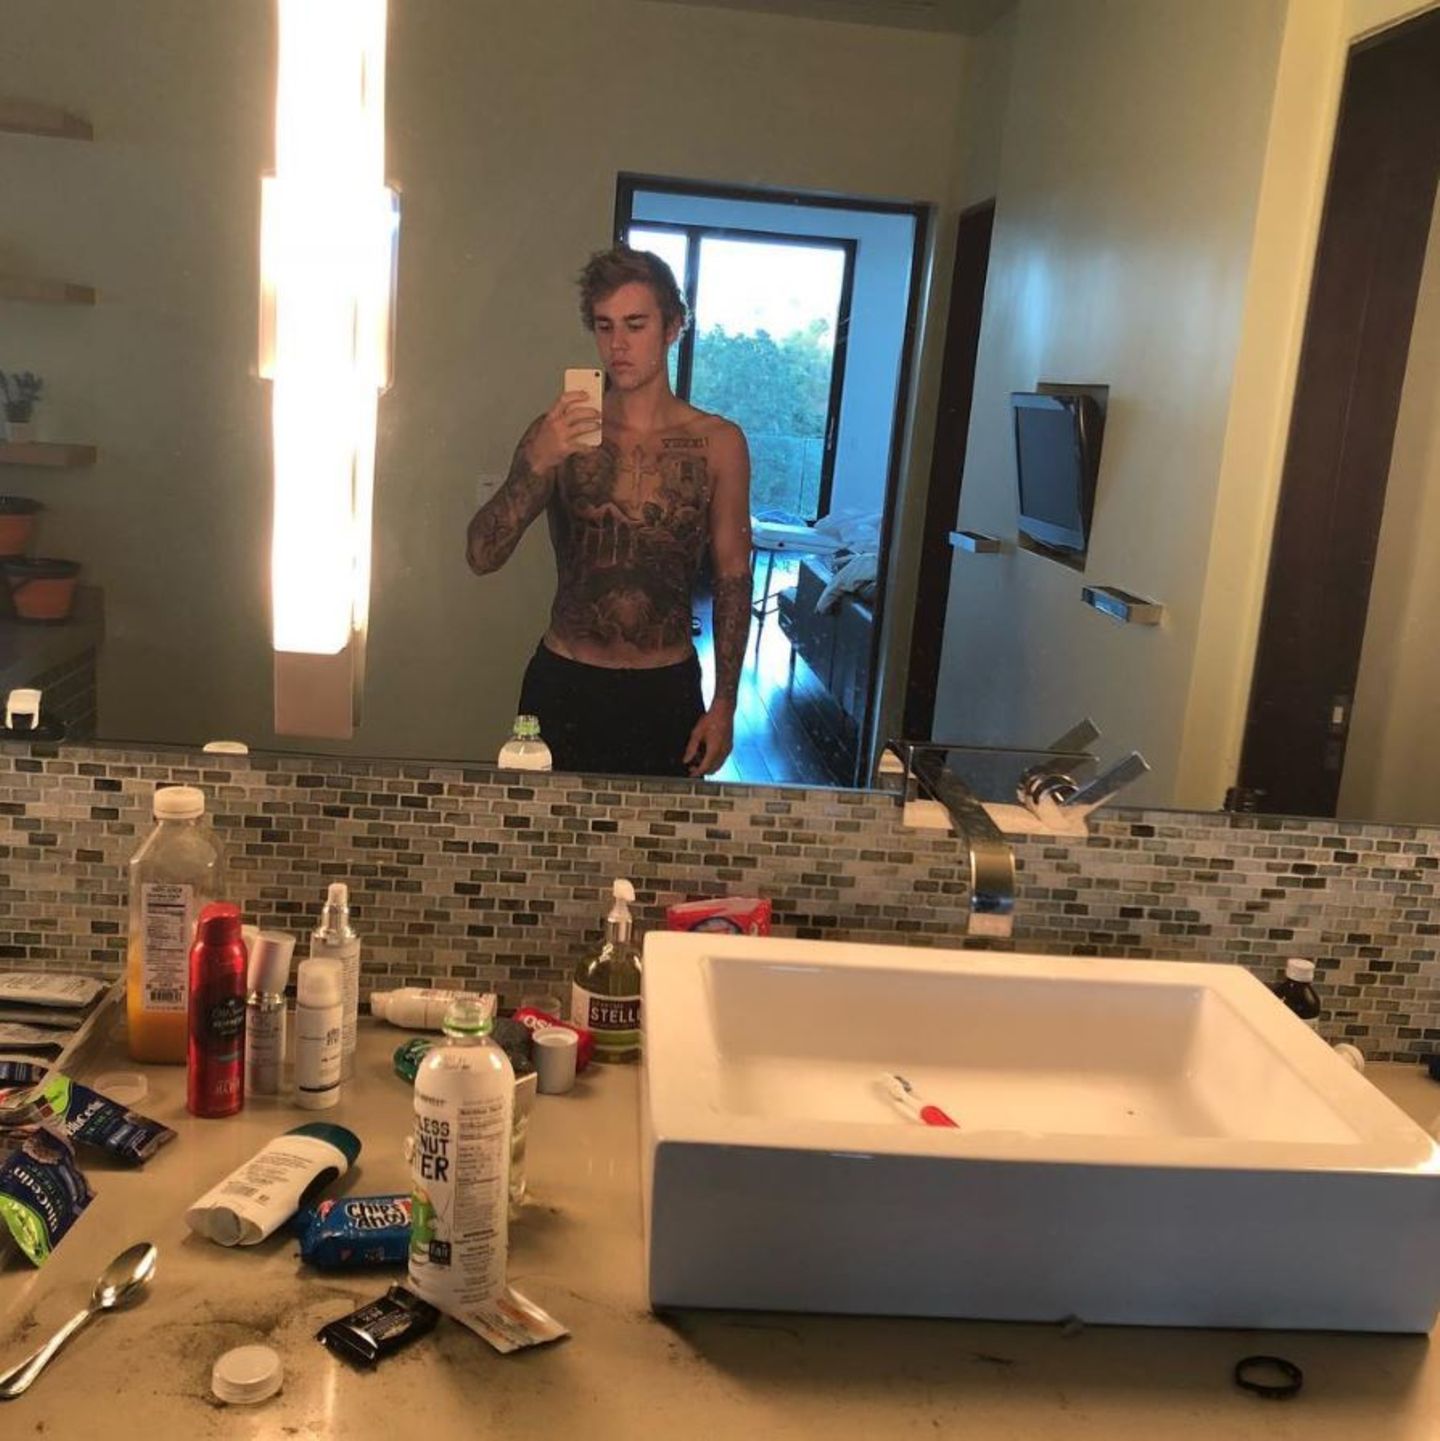 Auf den ersten Blick fällt nur das unordentliche Badezimmer auf. Auf den zweiten Blick erkennt man dann, dass Justin Bieber neuerdings den kompletten Oberkörper tätowiert hat. Mit diesem Spiegelselfie machte er auf jeden Fall ordentlich Schlagzeilen, denn es war das erste Bild seiner neuen Körperbemalung. 